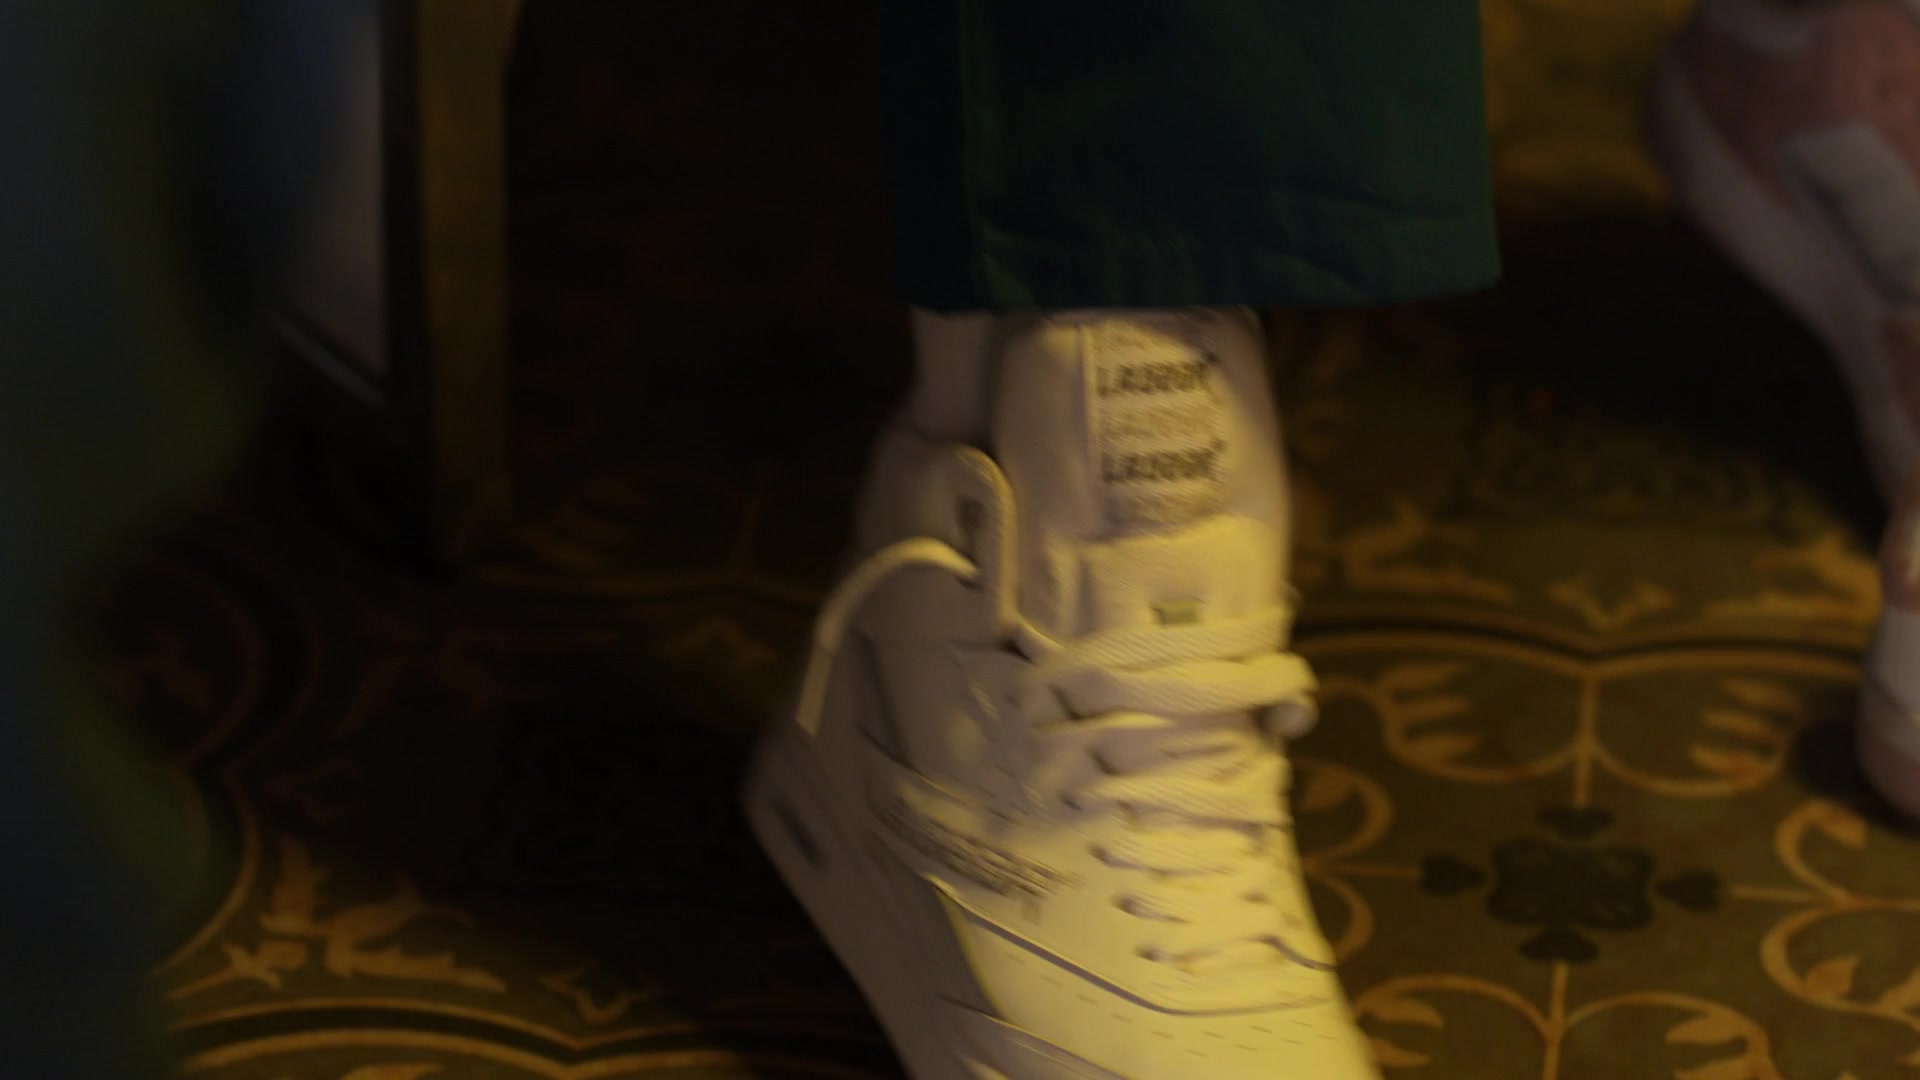 LA Gear Sneakers In Quantum Leap S02E05 